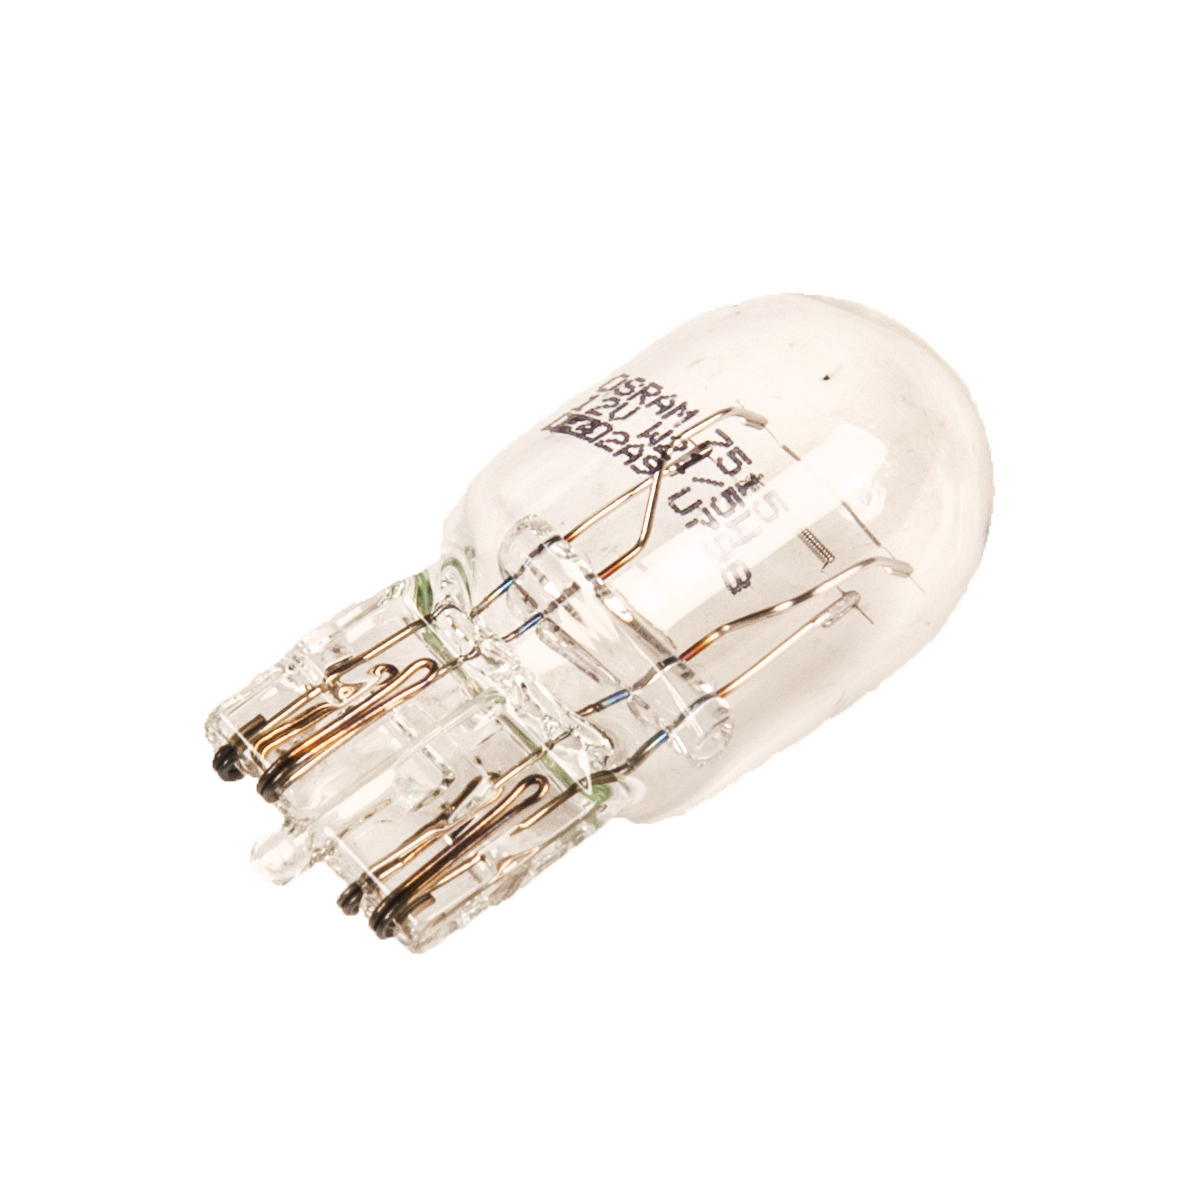 Лампа накаливания 12В W21/5W 2х-нитевая без цоколя Osram 7515 от магазина А-маркет